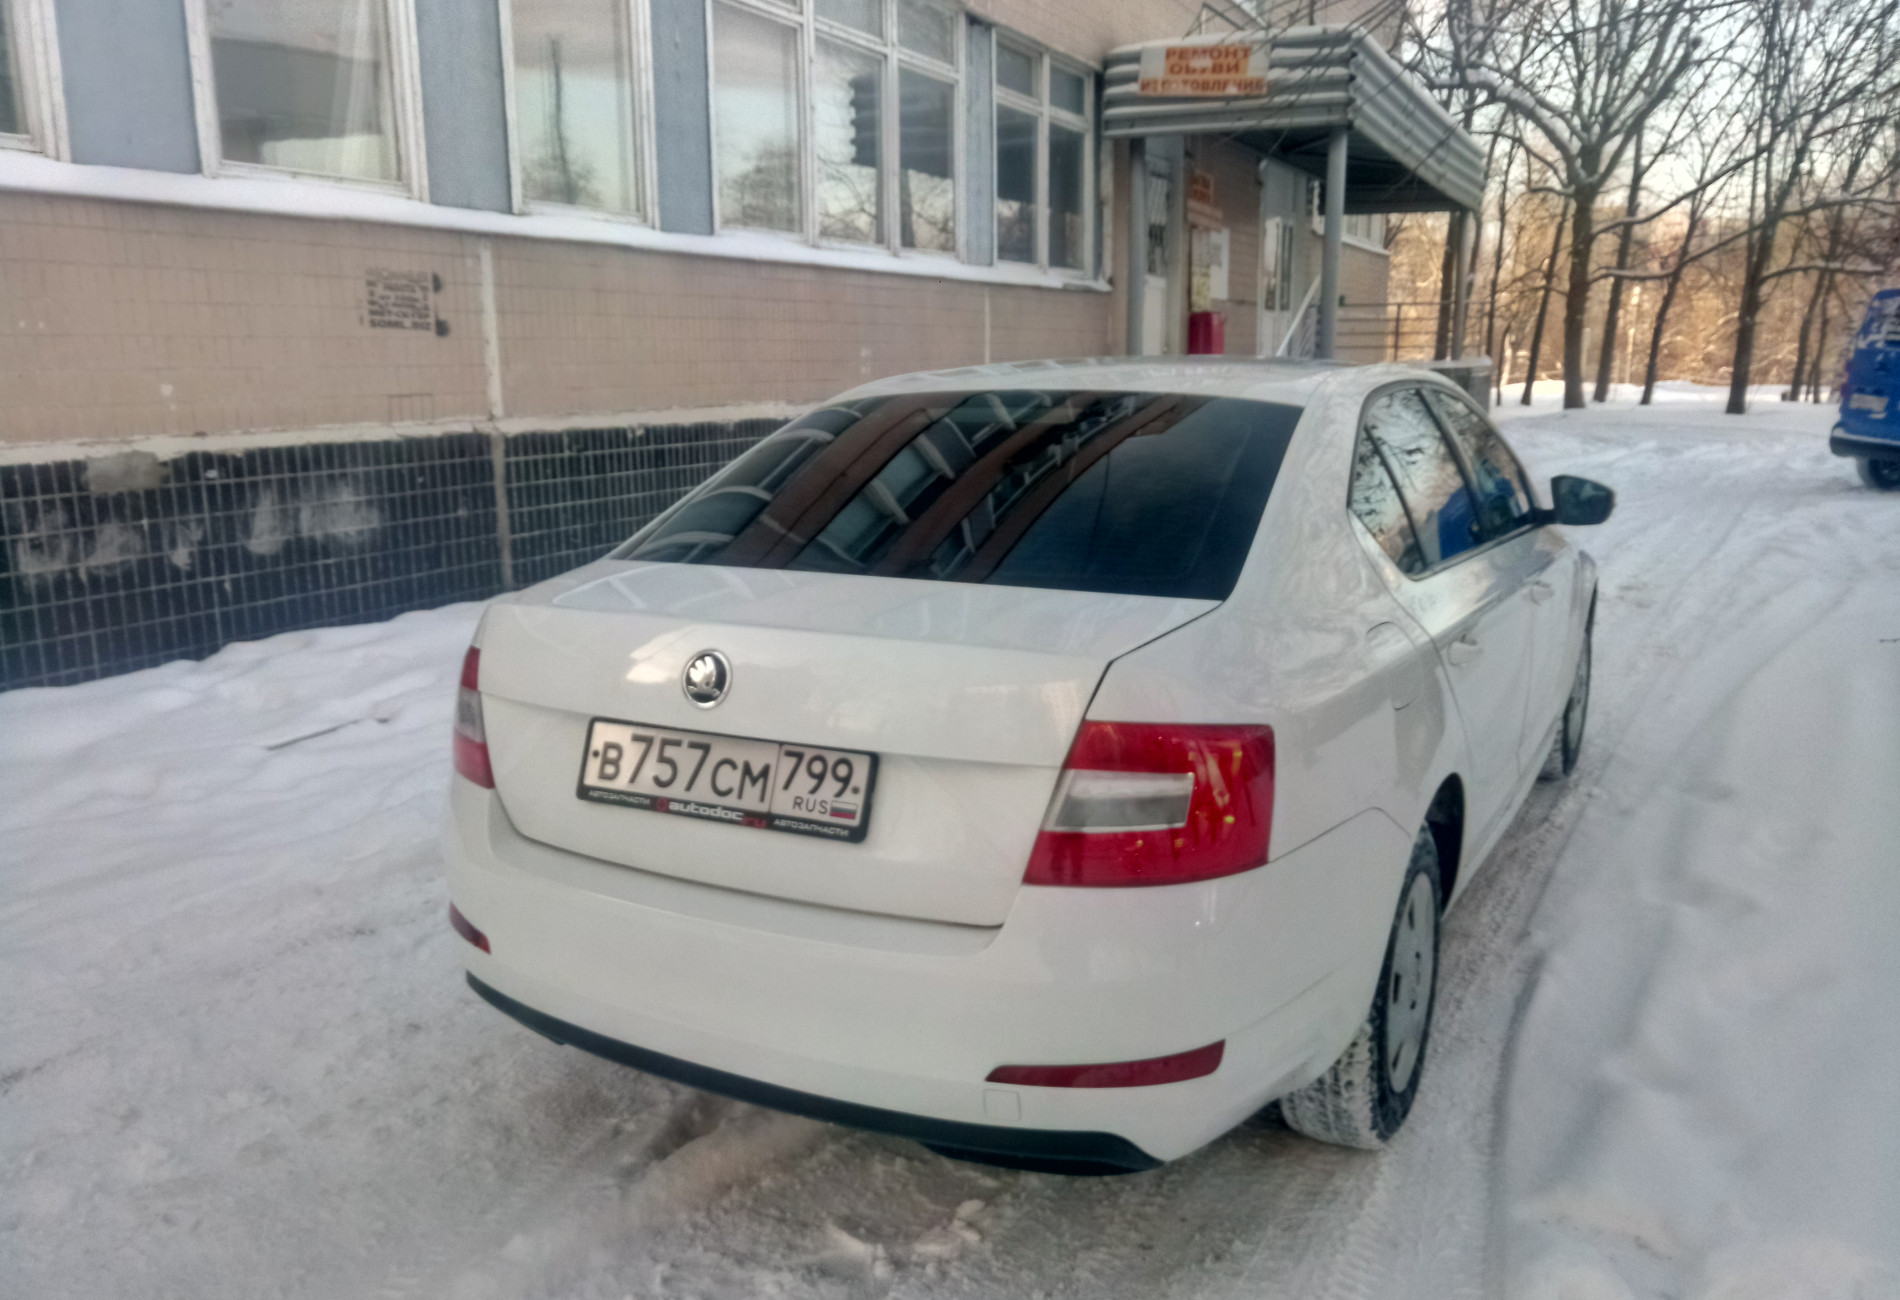 Аренда skoda octavia эконом класса 2015 года в городе Москва Ясенево от 1490 руб./сутки, передний привод, двигатель: бензин, объем 1.6 литров, ОСАГО (Мультидрайв), без водителя, недорого, вид 2 - RentRide